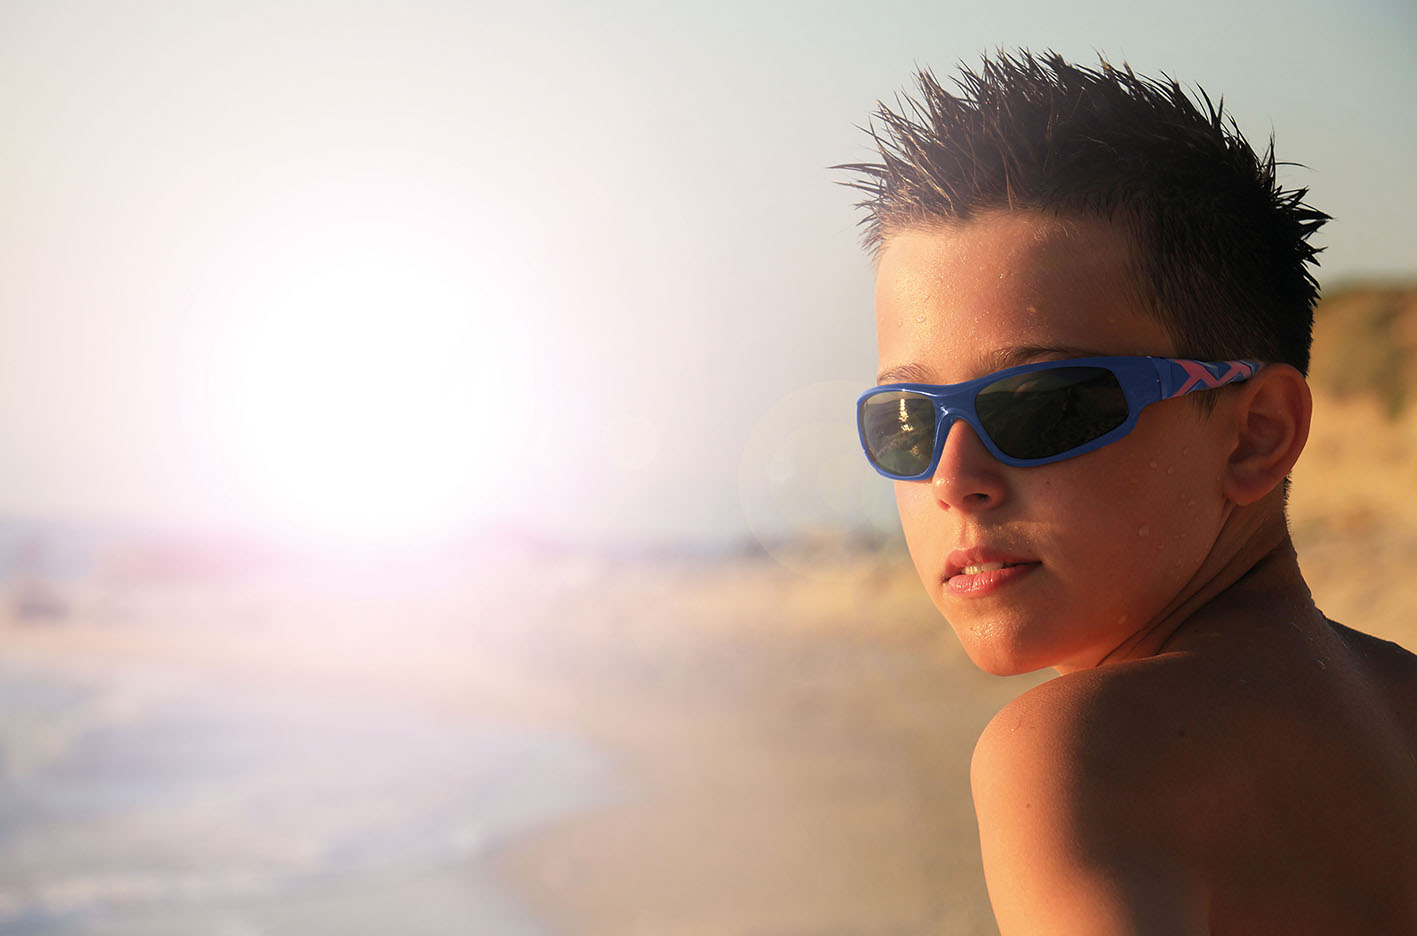 Lunettes de soleil en pharmacie : lunettes solaires Horizane, la protection  totale pour vos yeux.